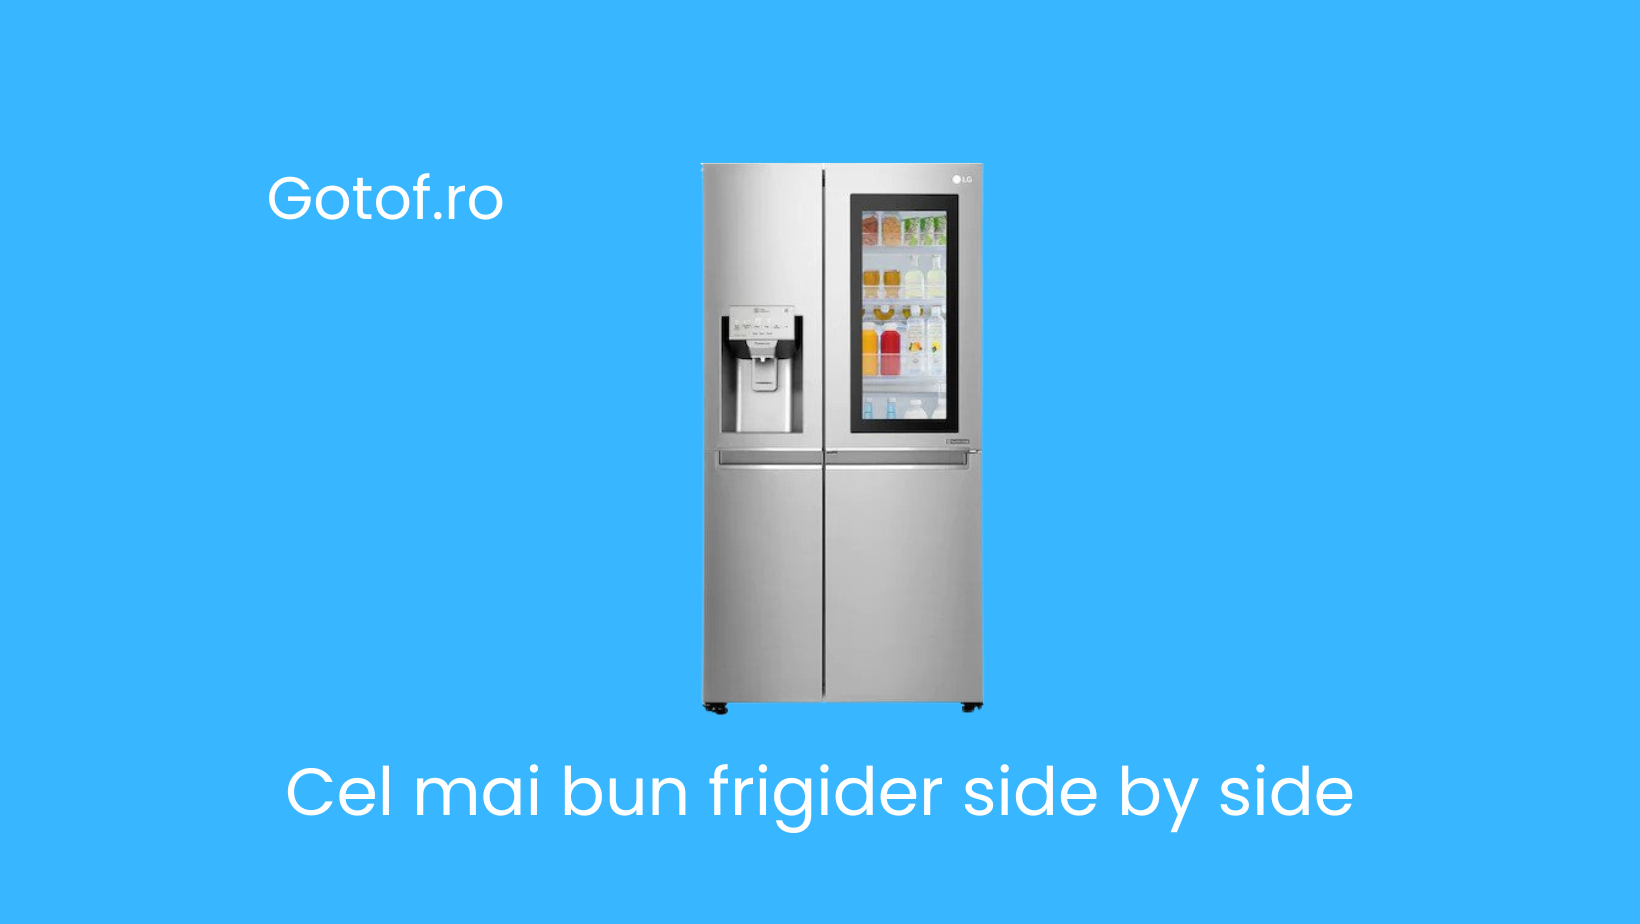 Cel mai bun frigider side by side